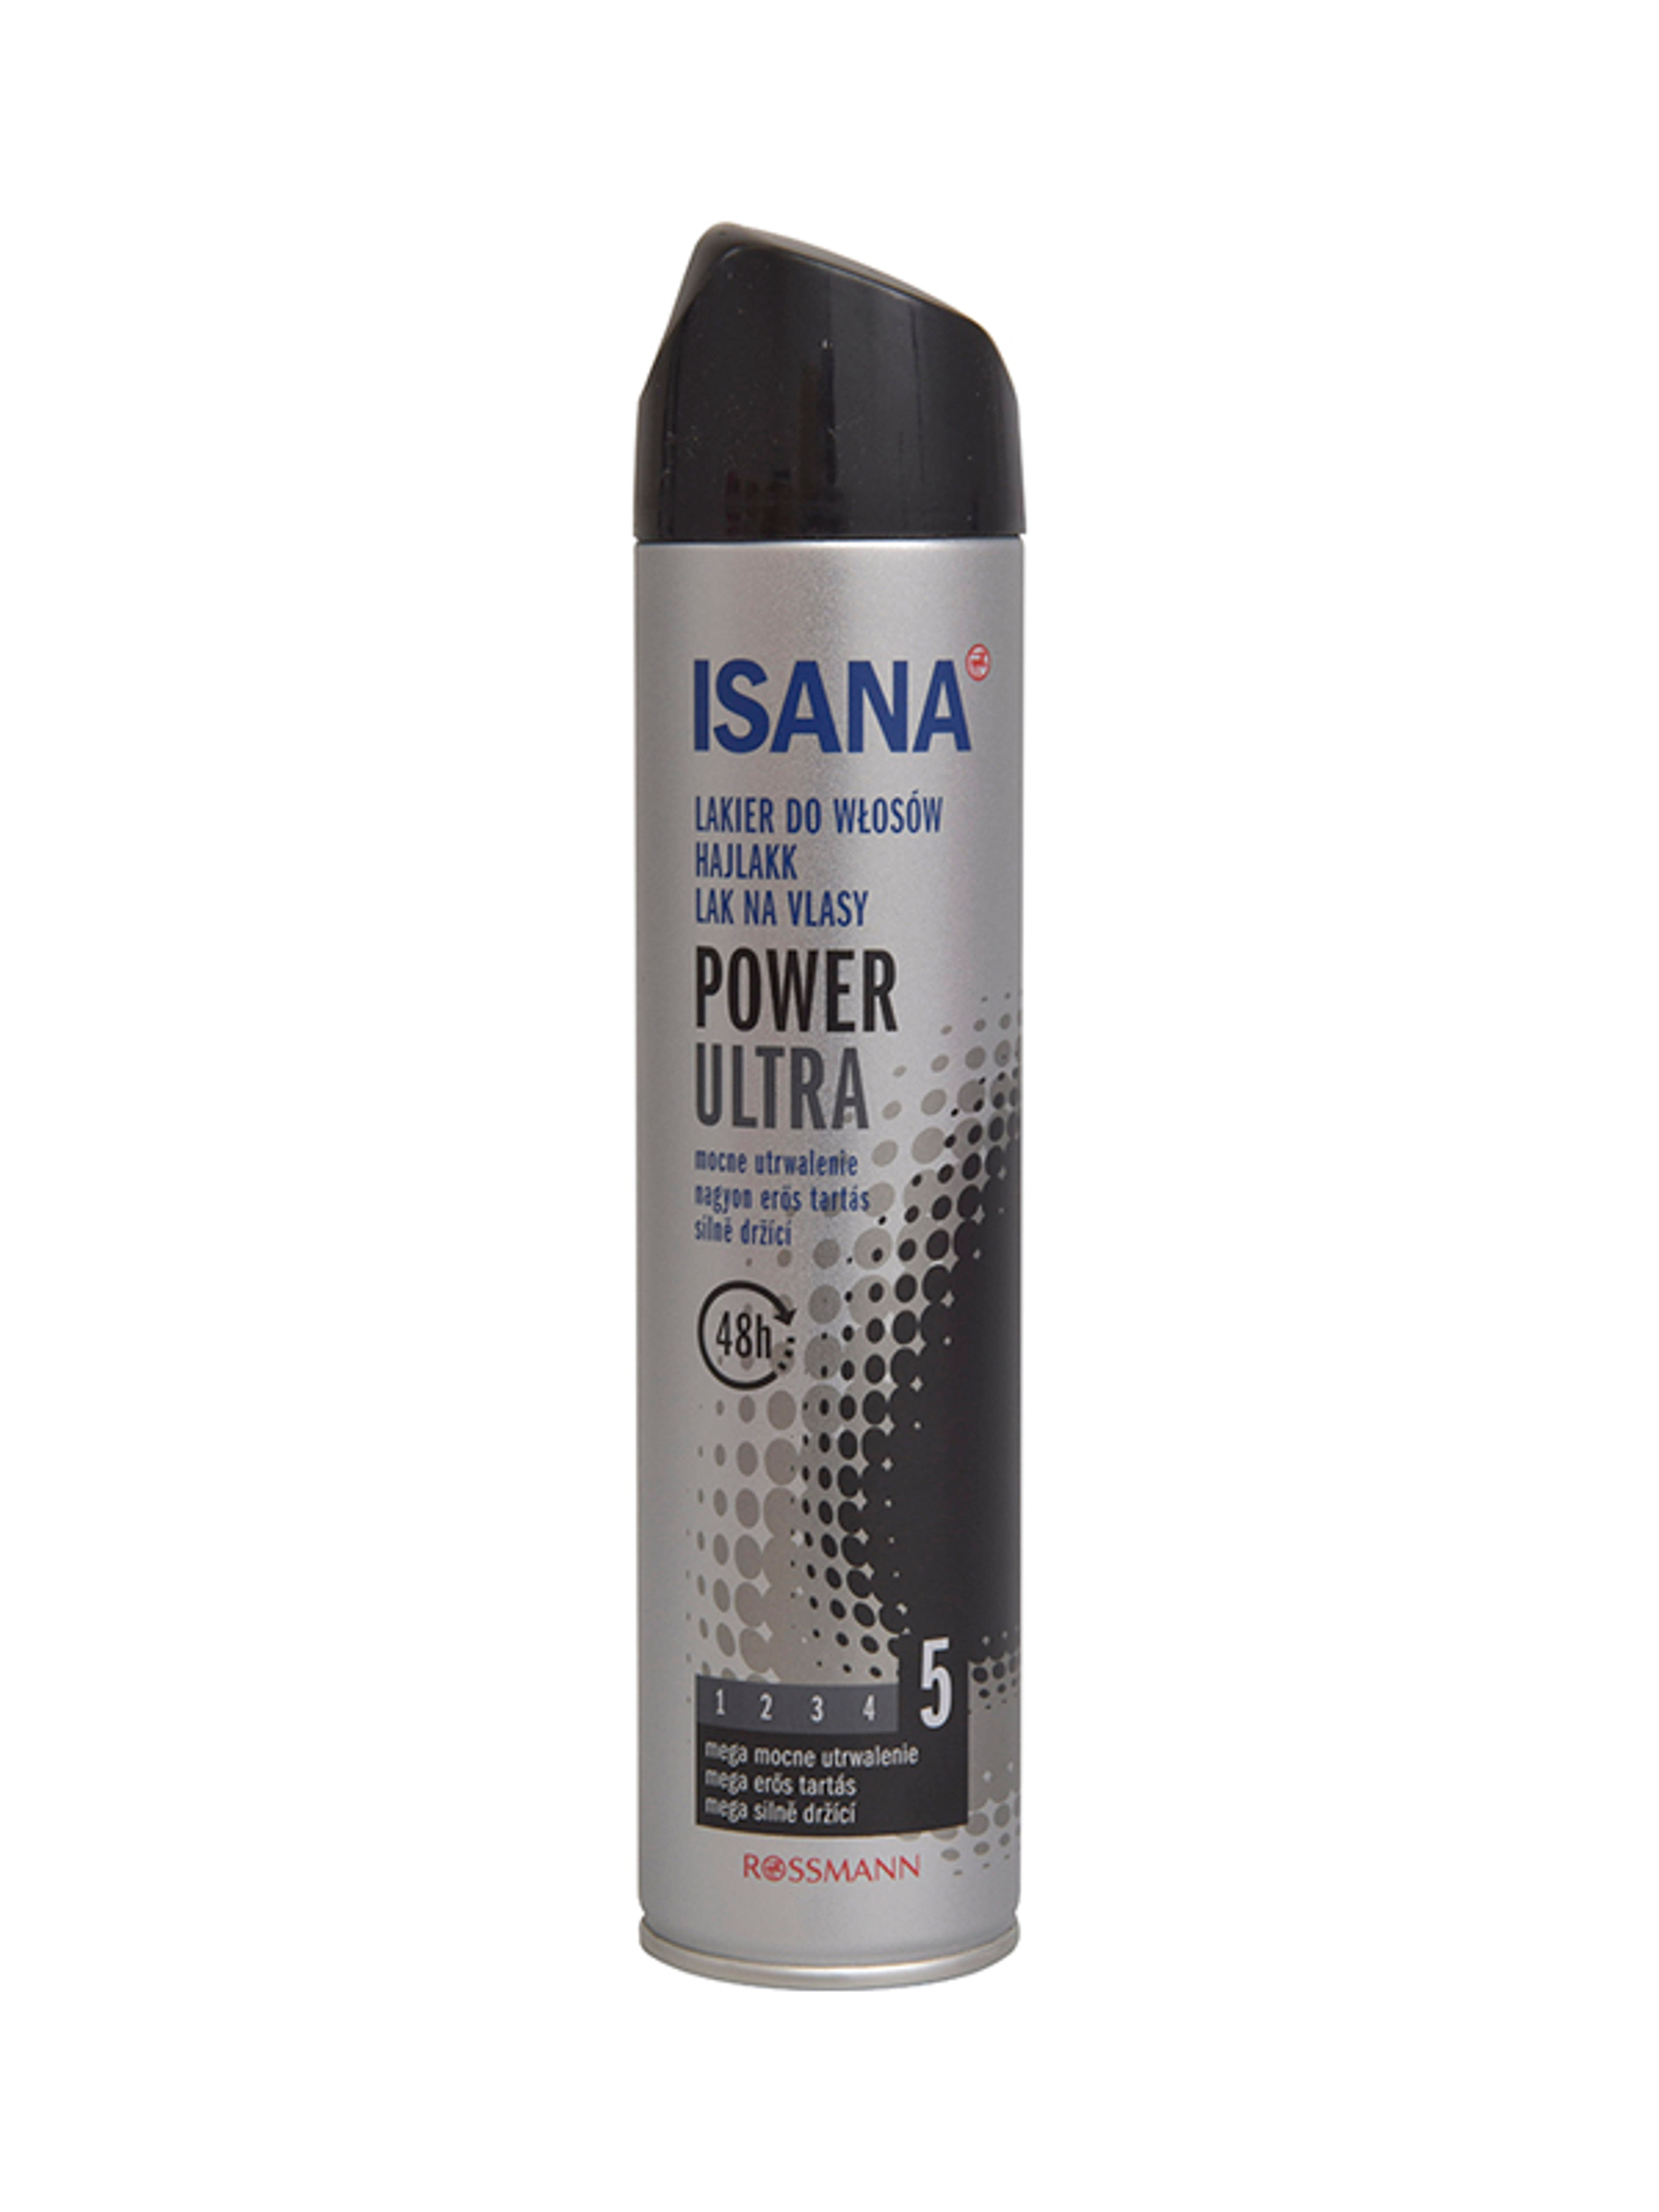 Isana Hair Power hajlakk - 250 ml-1